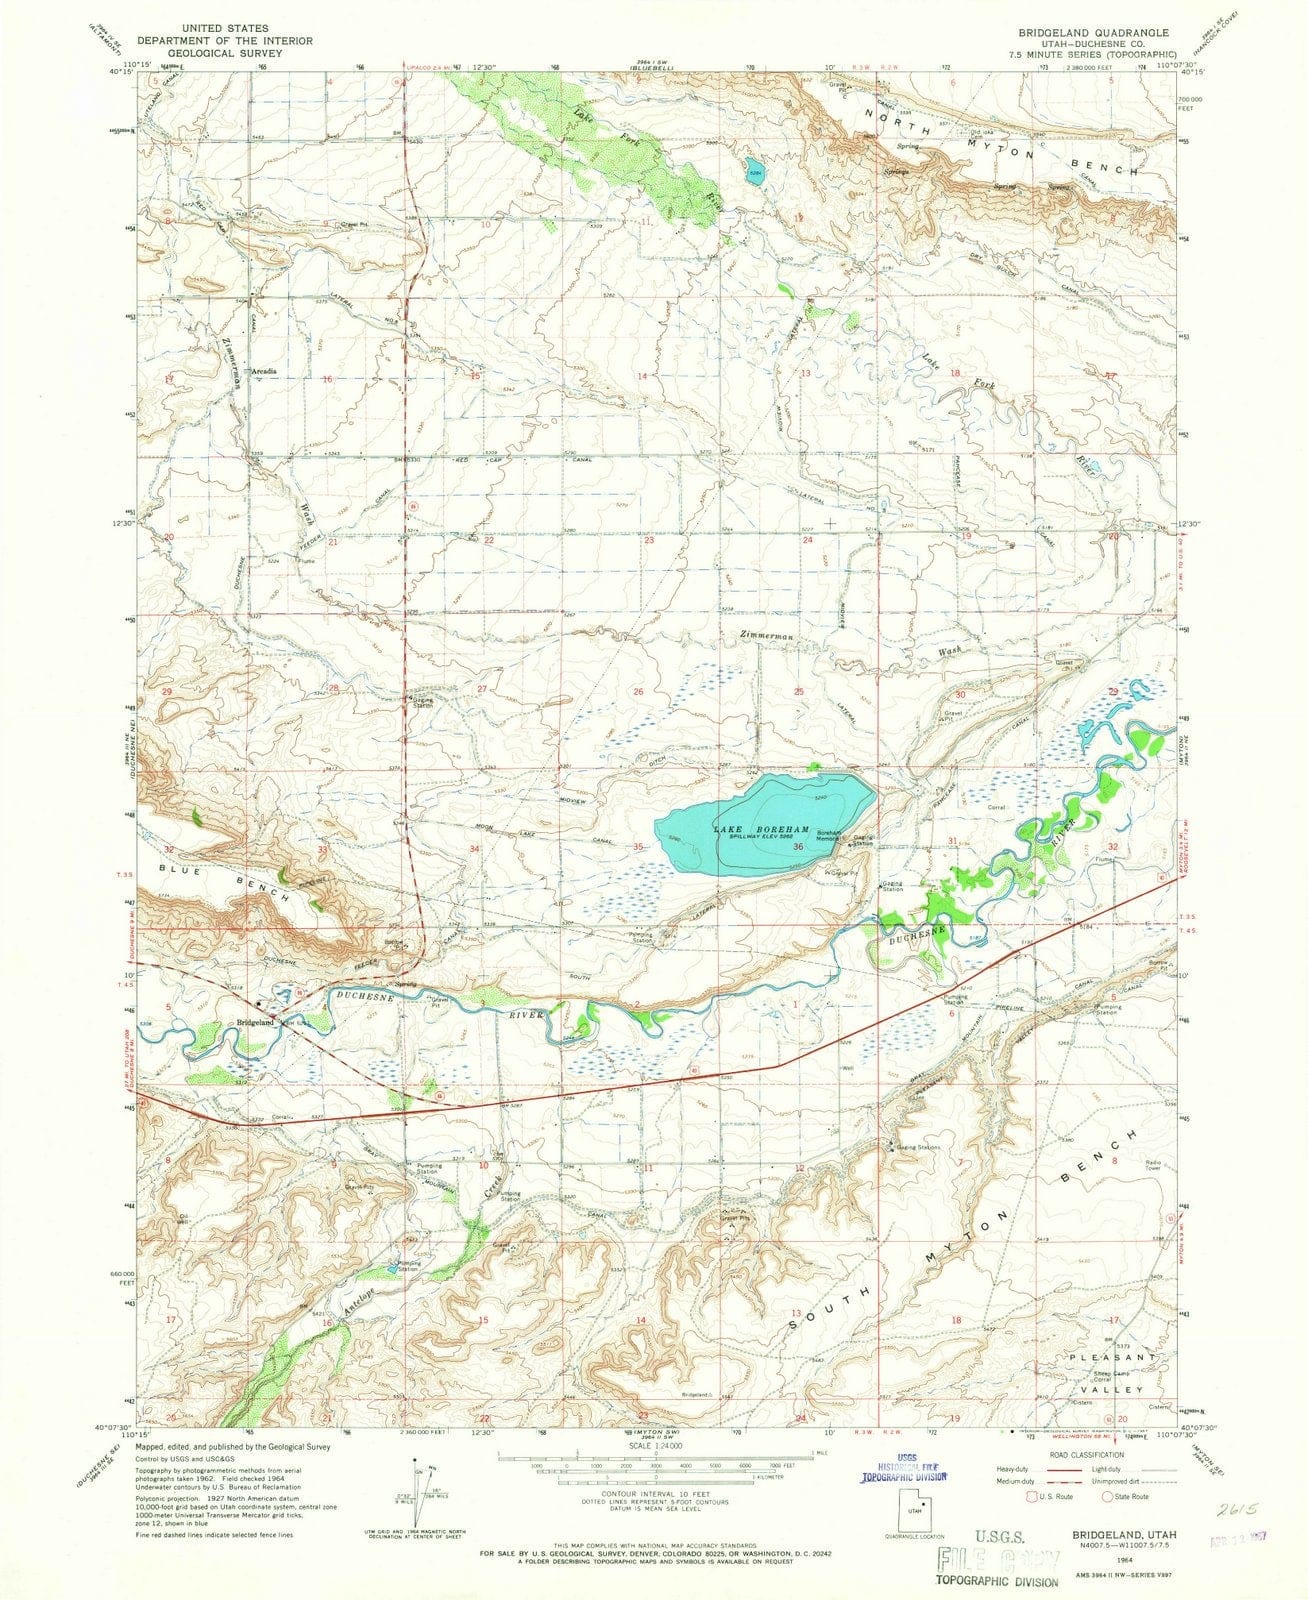 1964 Bridgeland, UT - Utah - USGS Topographic Map